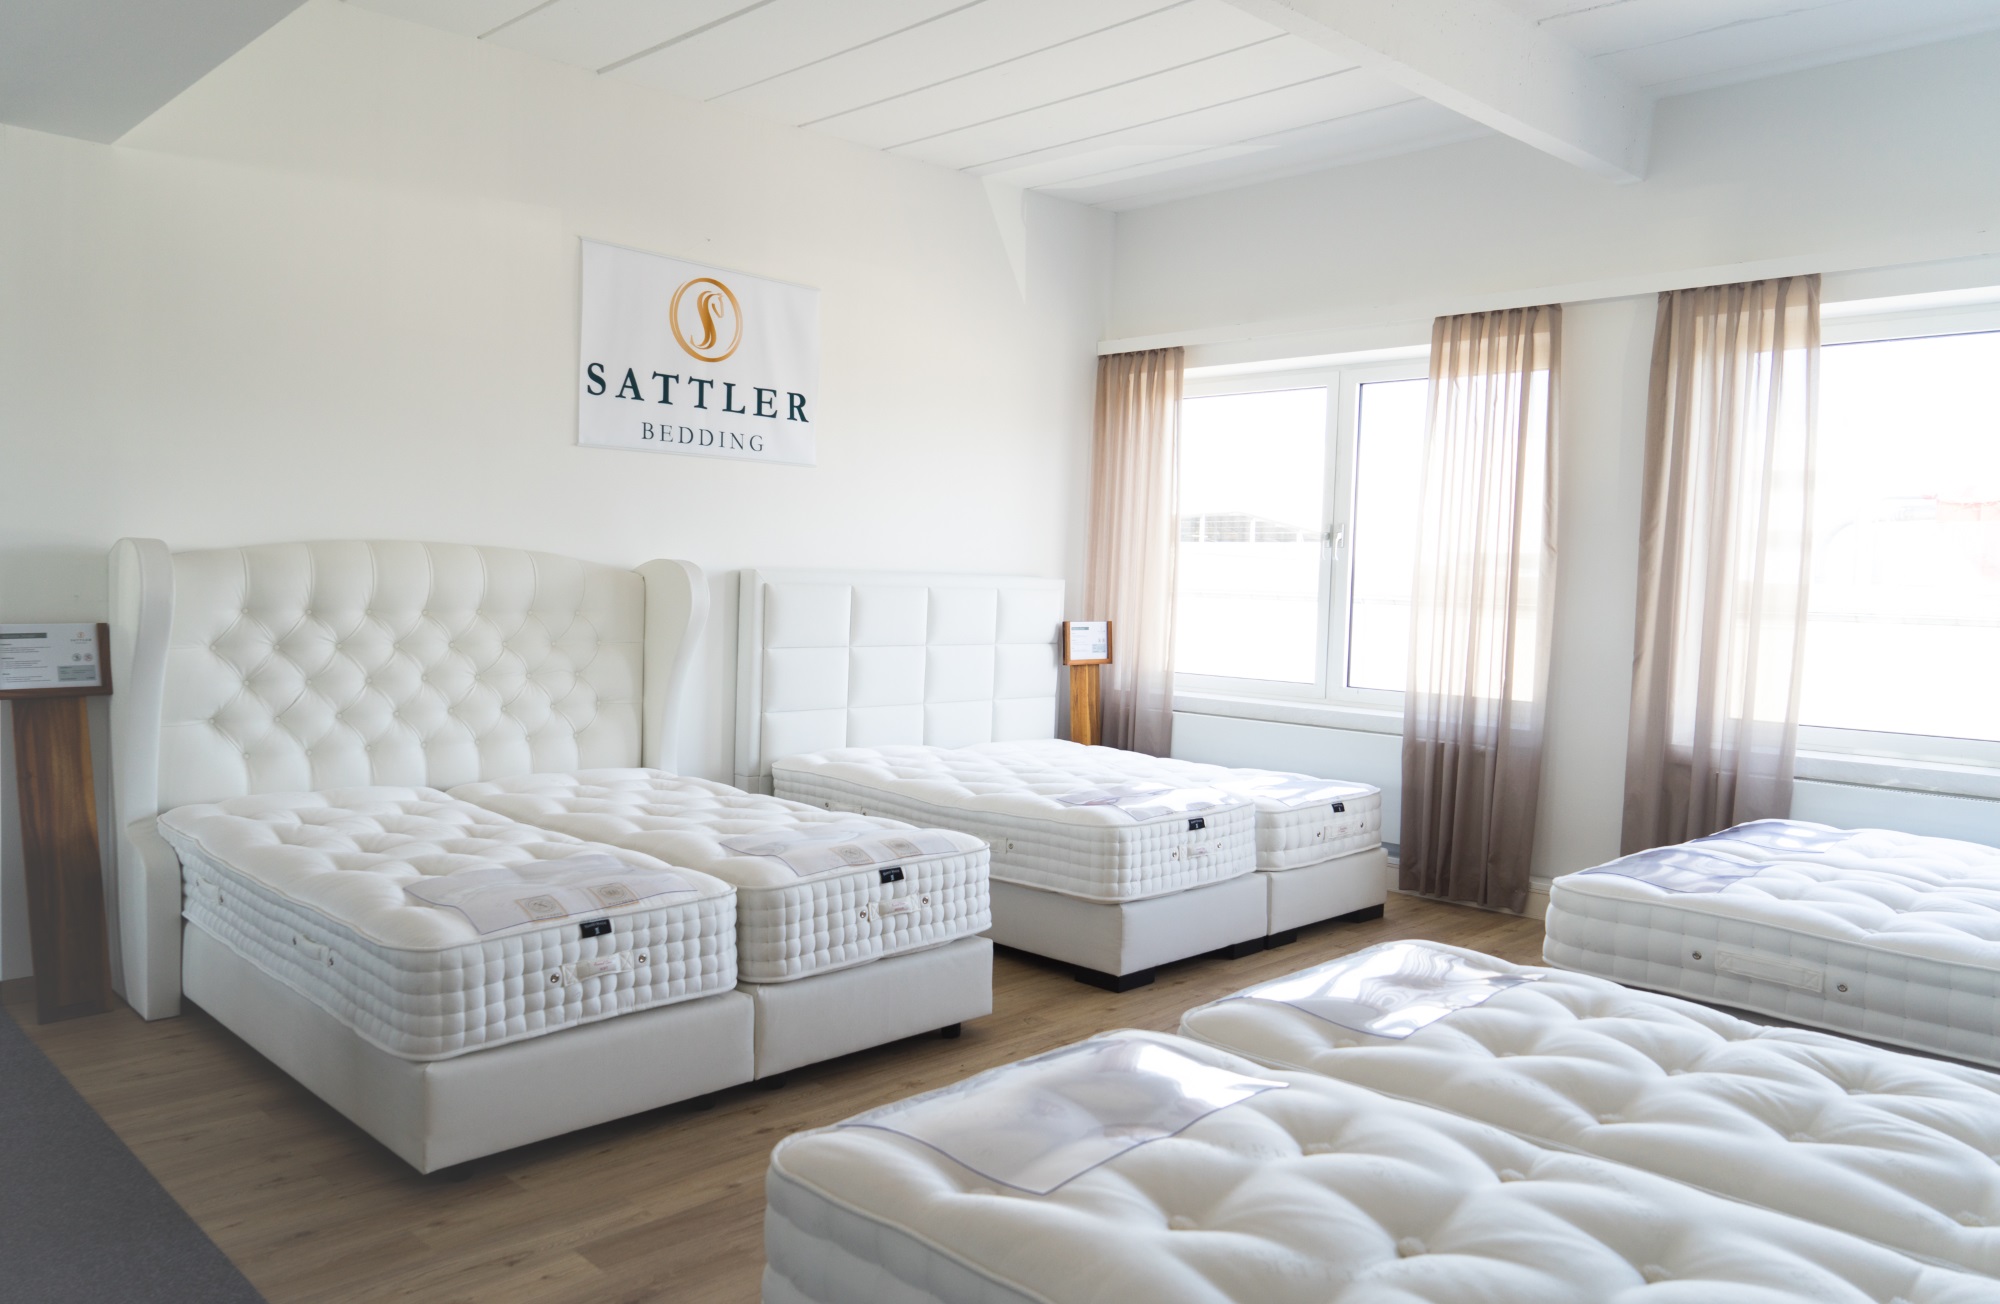 Sattler Bedding - Fachgeschäft für Matratzen & Betten, Herforder Str 309 in Bielefeld